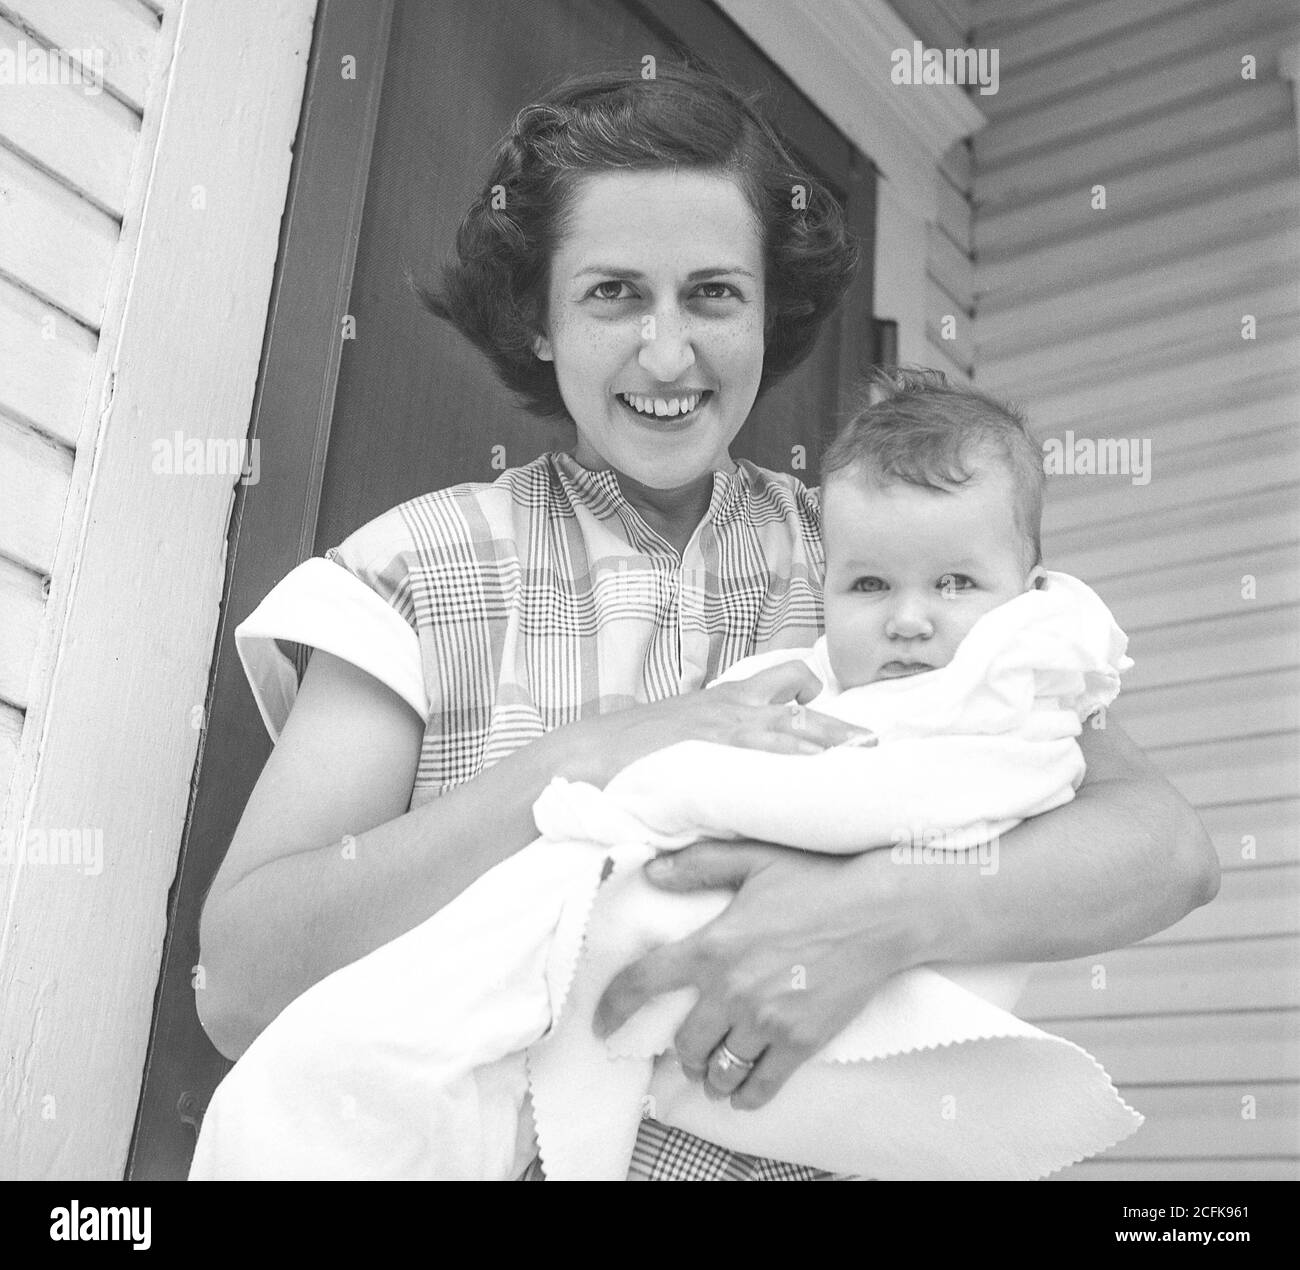 Mère et nouvelle fille, Photographie noir et blanc d'époque des années 1950 Banque D'Images